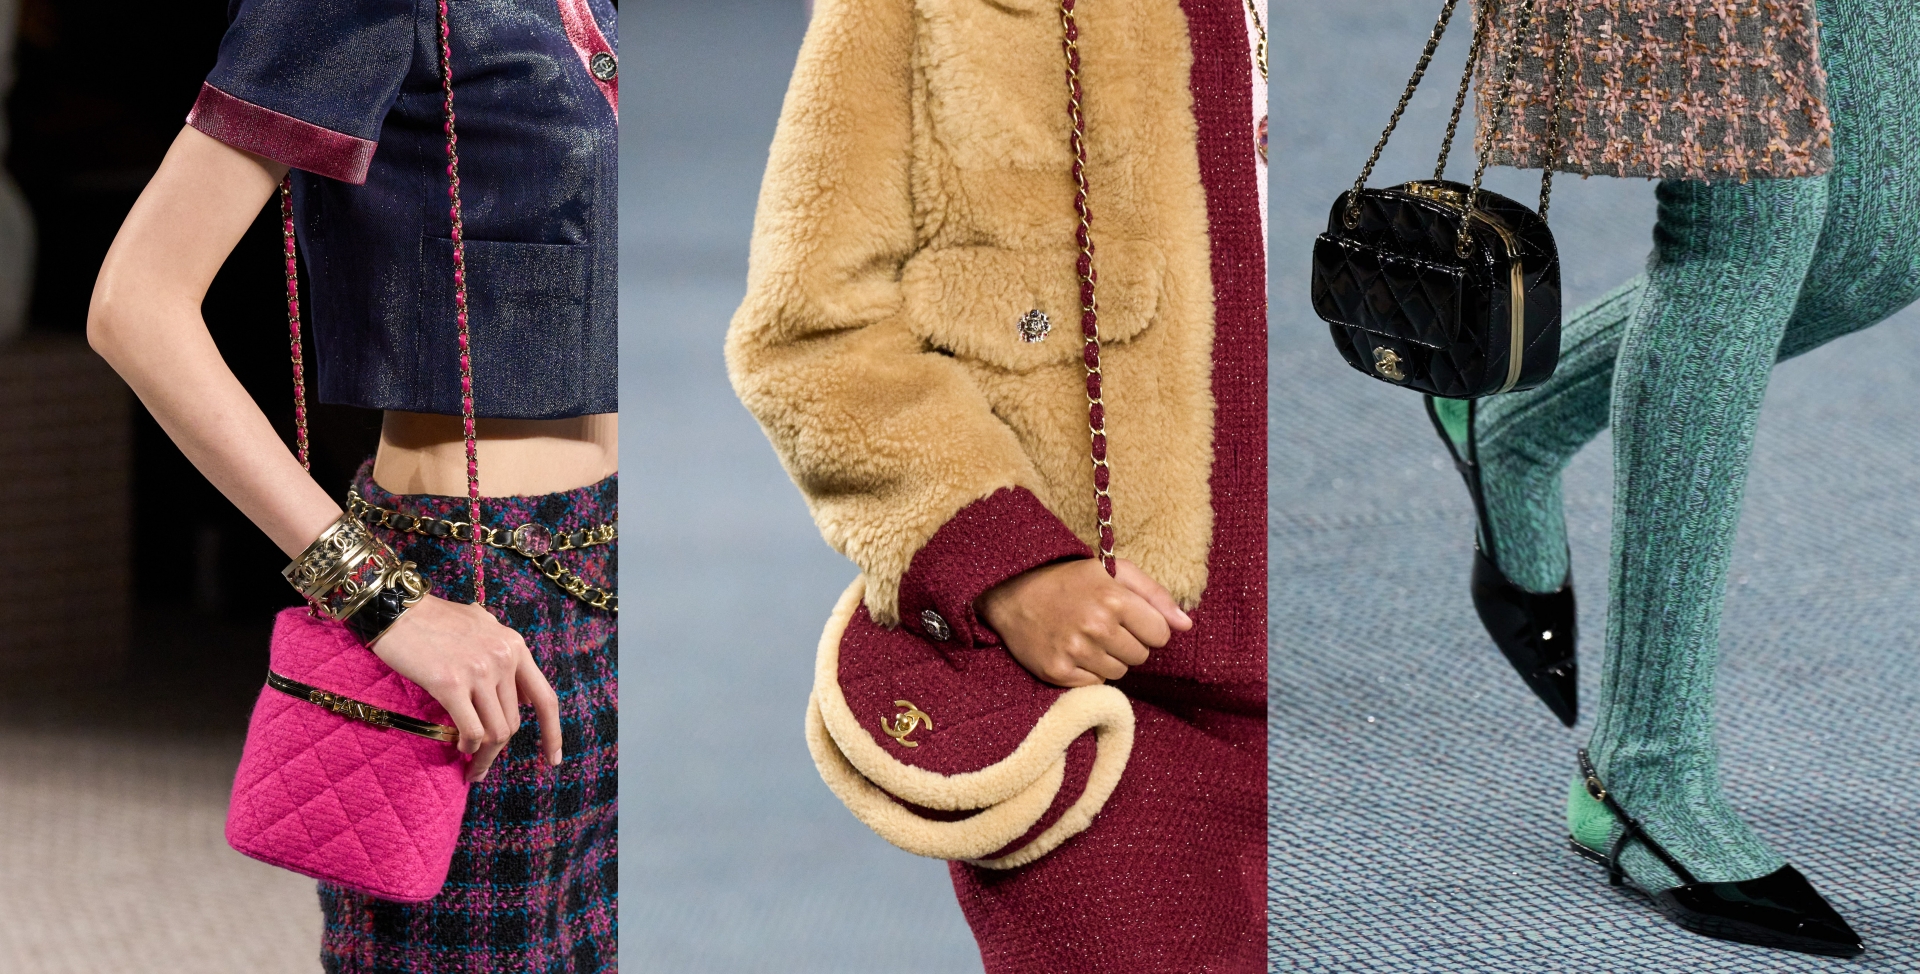 Những item biểu trưng cho thời trang nữ giới như túi Flap bag mini, giày kitten heels, slingback cũng được xuất hiện với vẻ ngoài mới mẻ và cuốn hút hơn. 